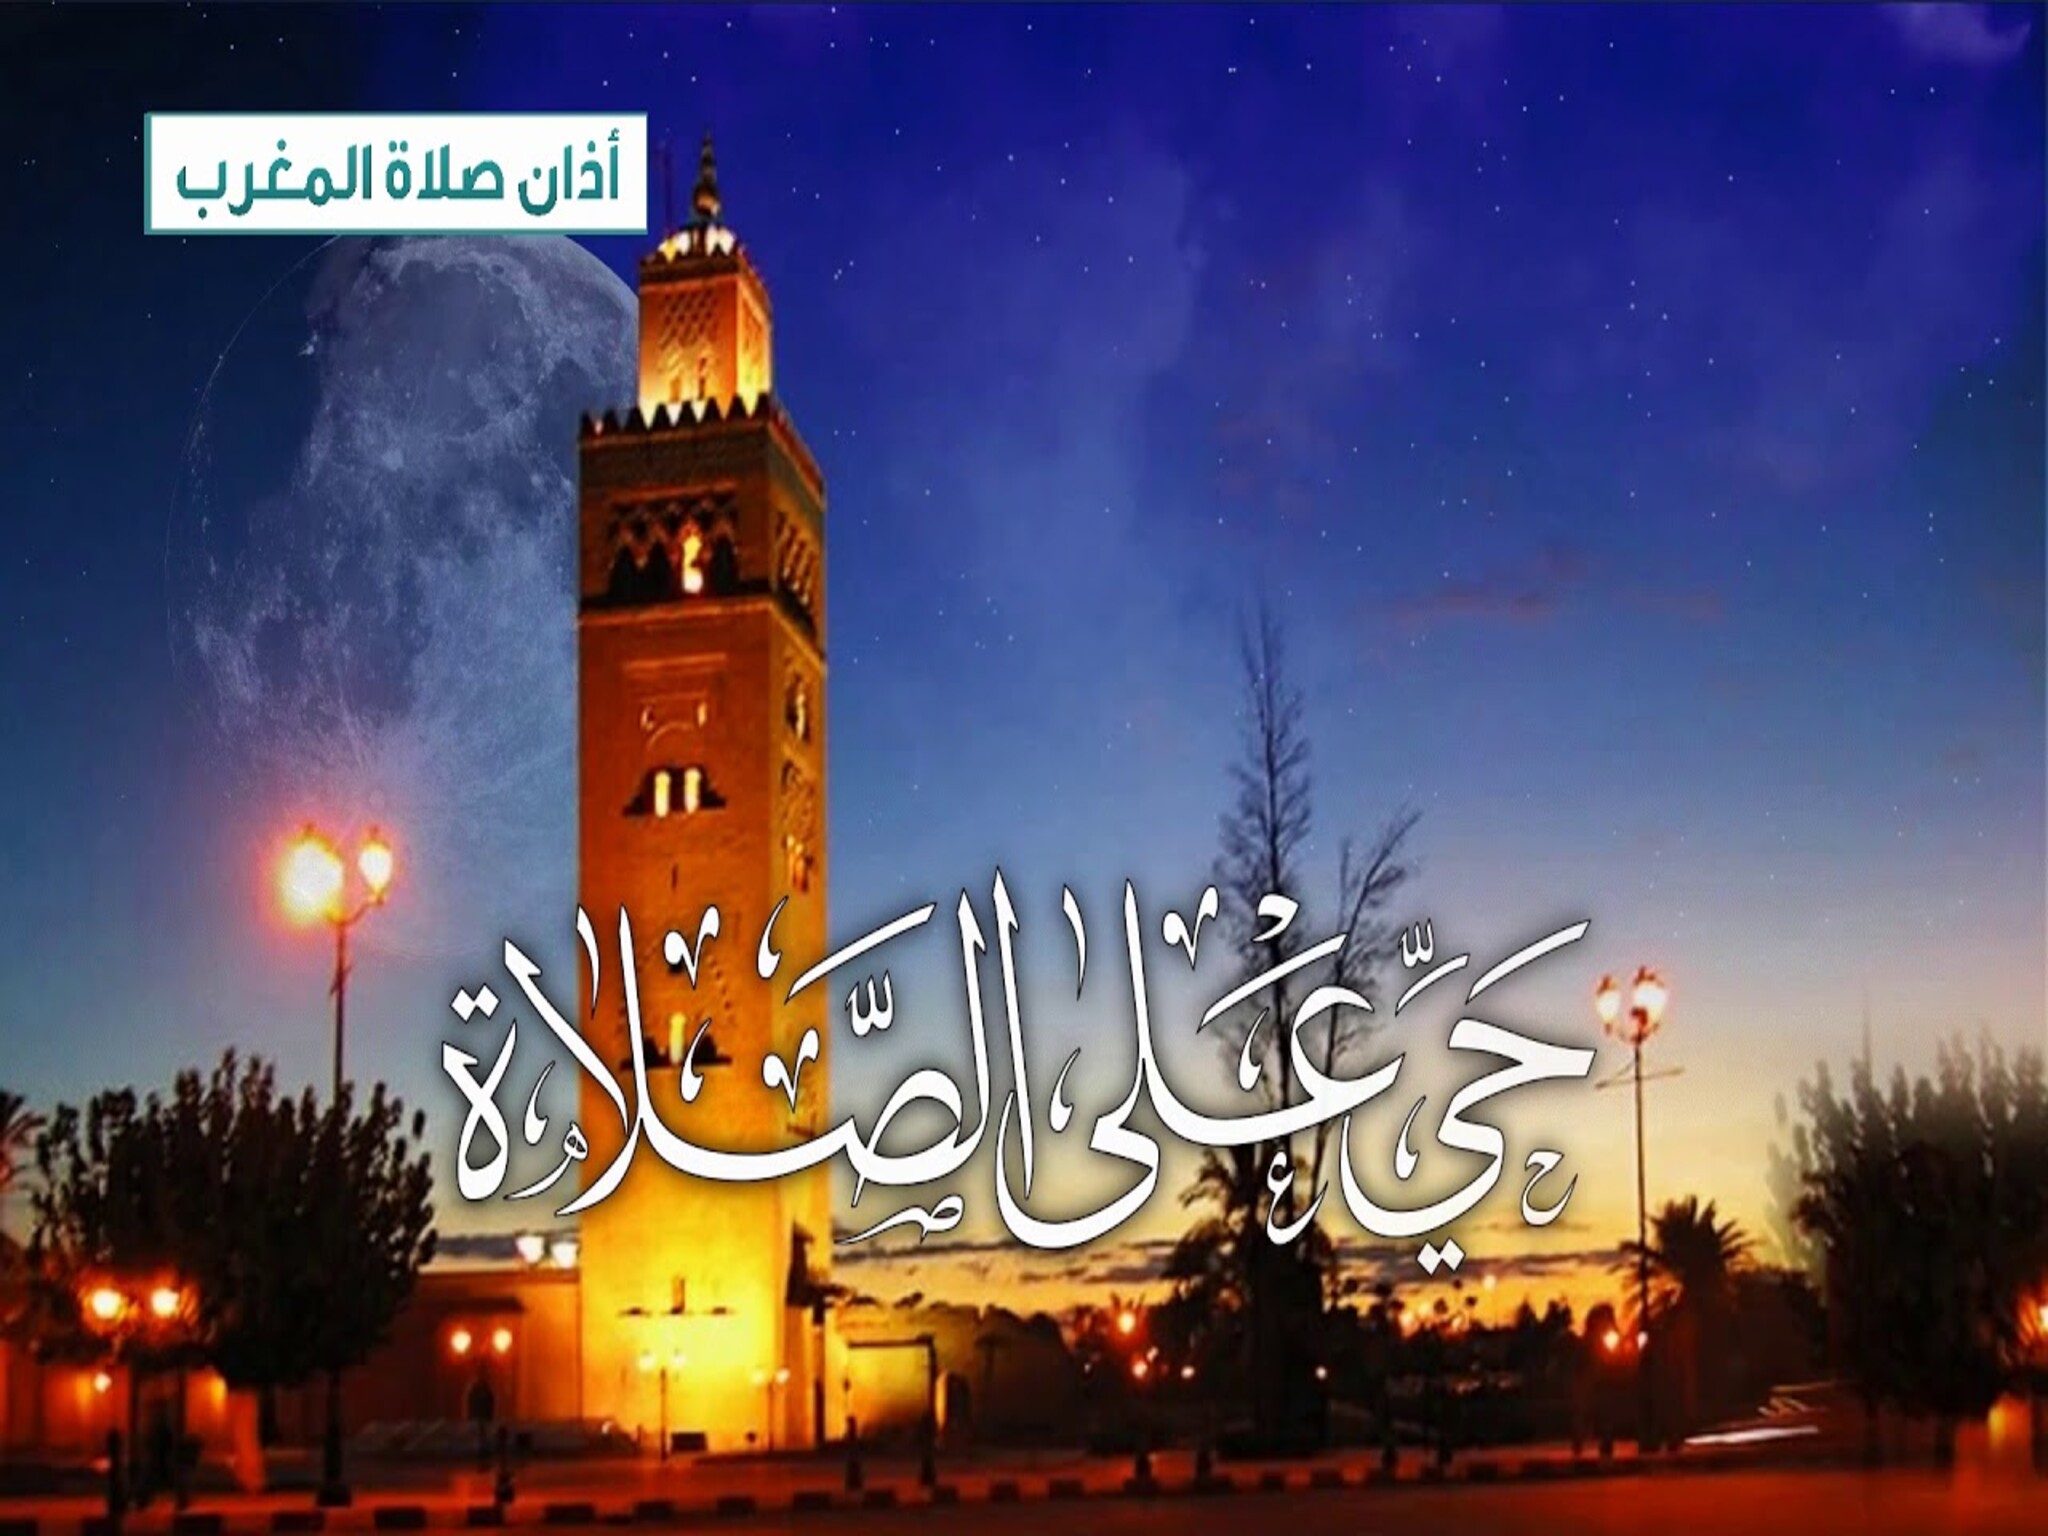 إعلان أسباب تأخير أذان المغرب في السعودية 3 دقائق في رمضان